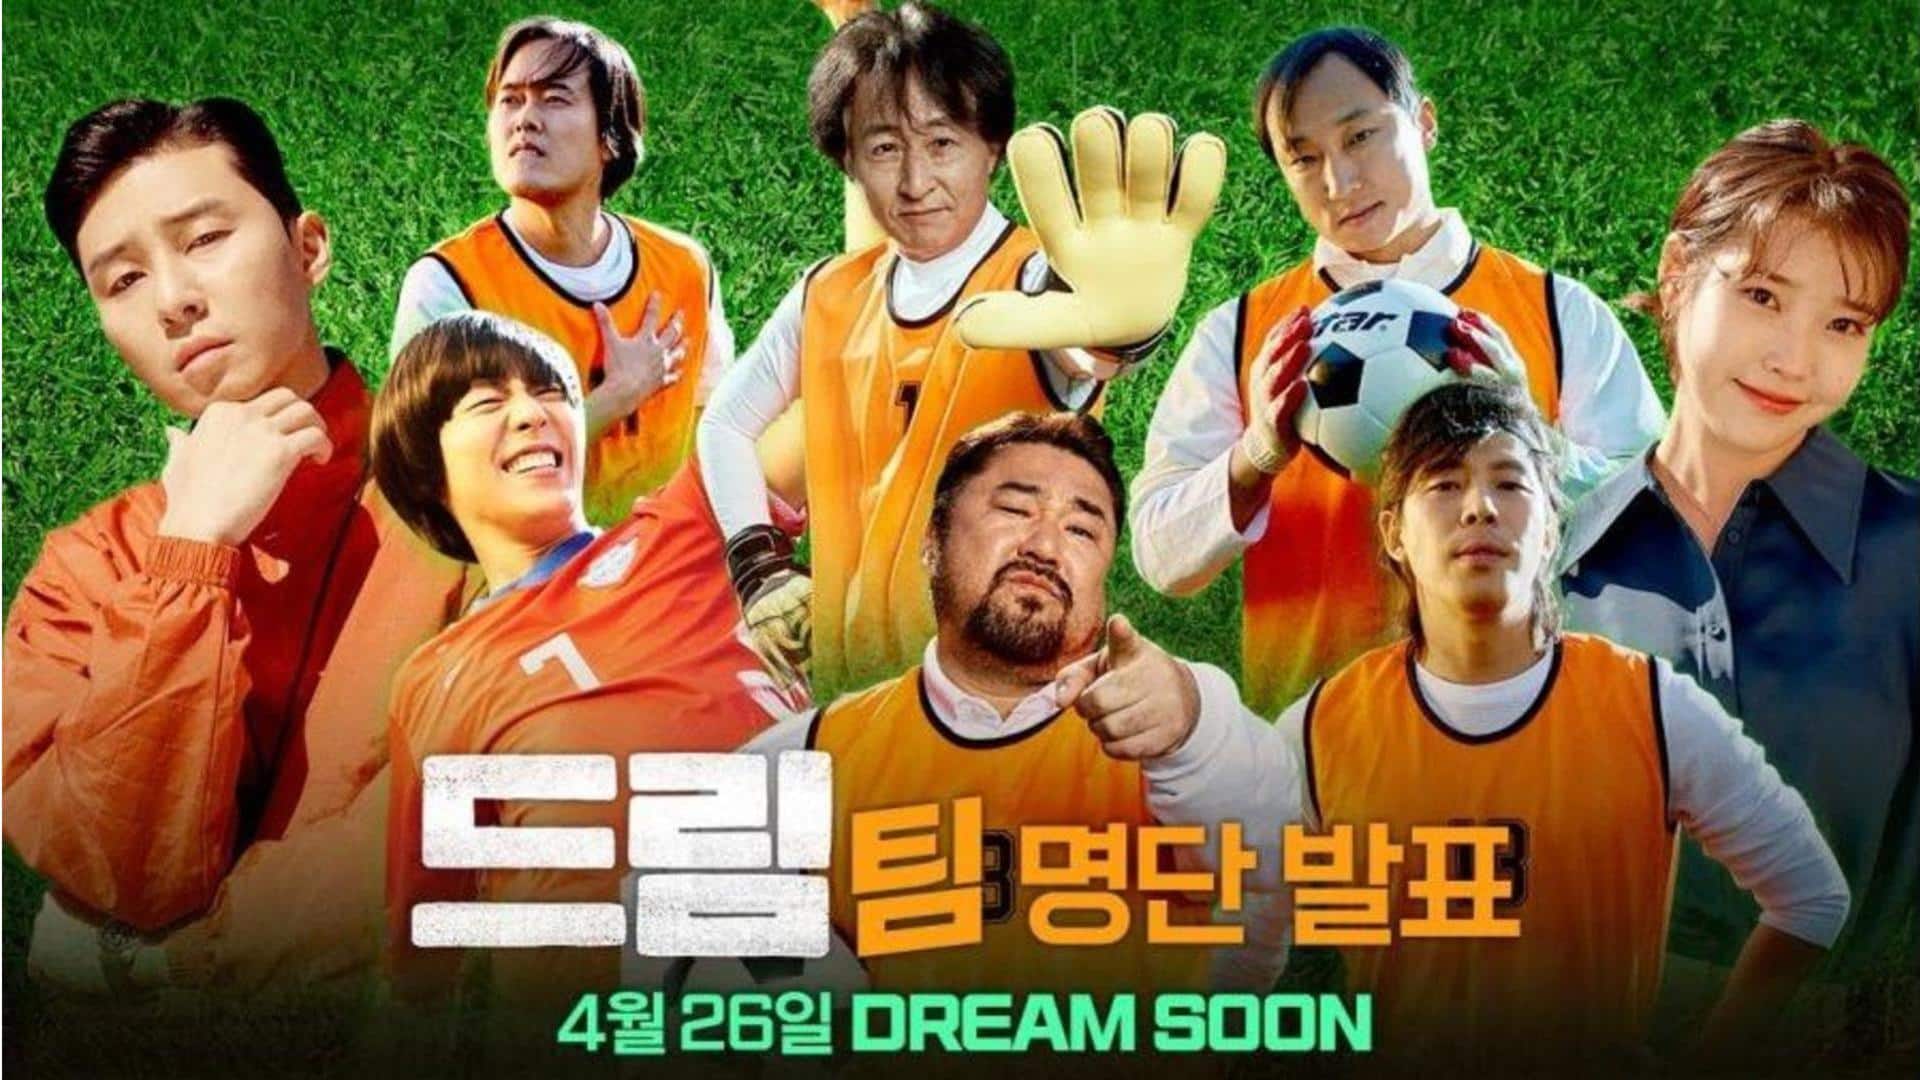 Park Seo-joon and IU's 'Dream' surpasses 1M footfall mark